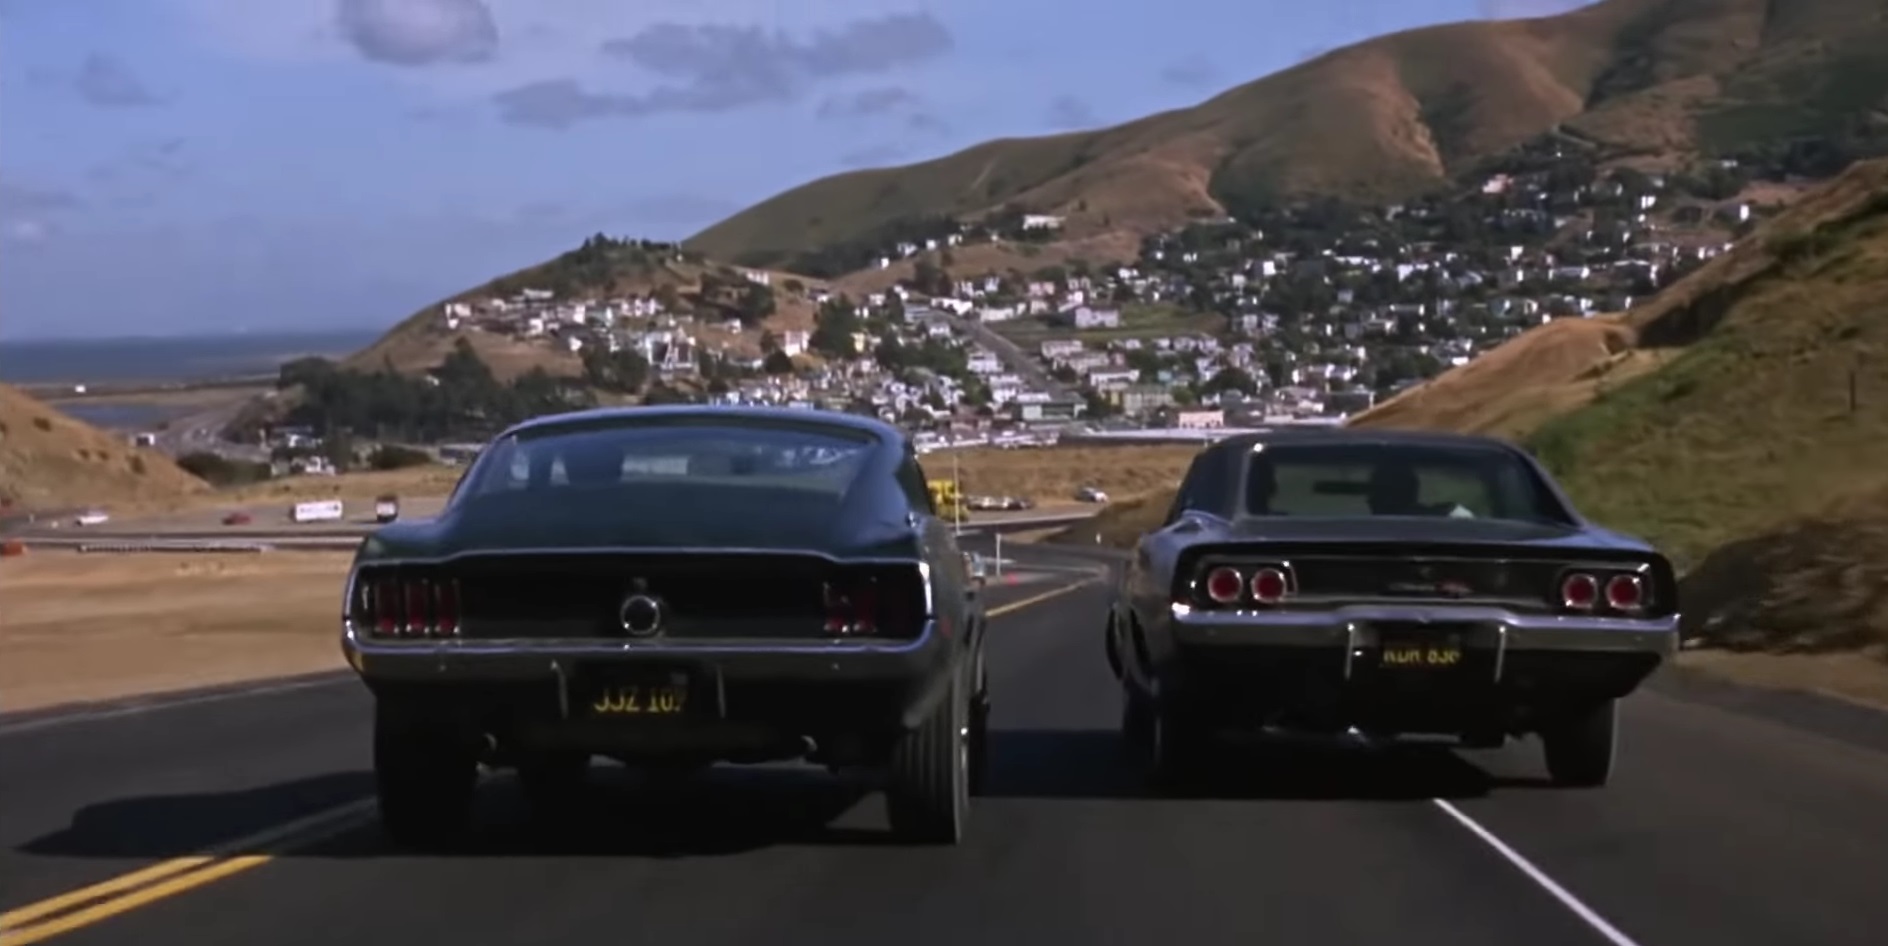 1968 Ford Mustang Bullit vs Dodge Charger Epic Scene From 1968 Film 'Bullit'